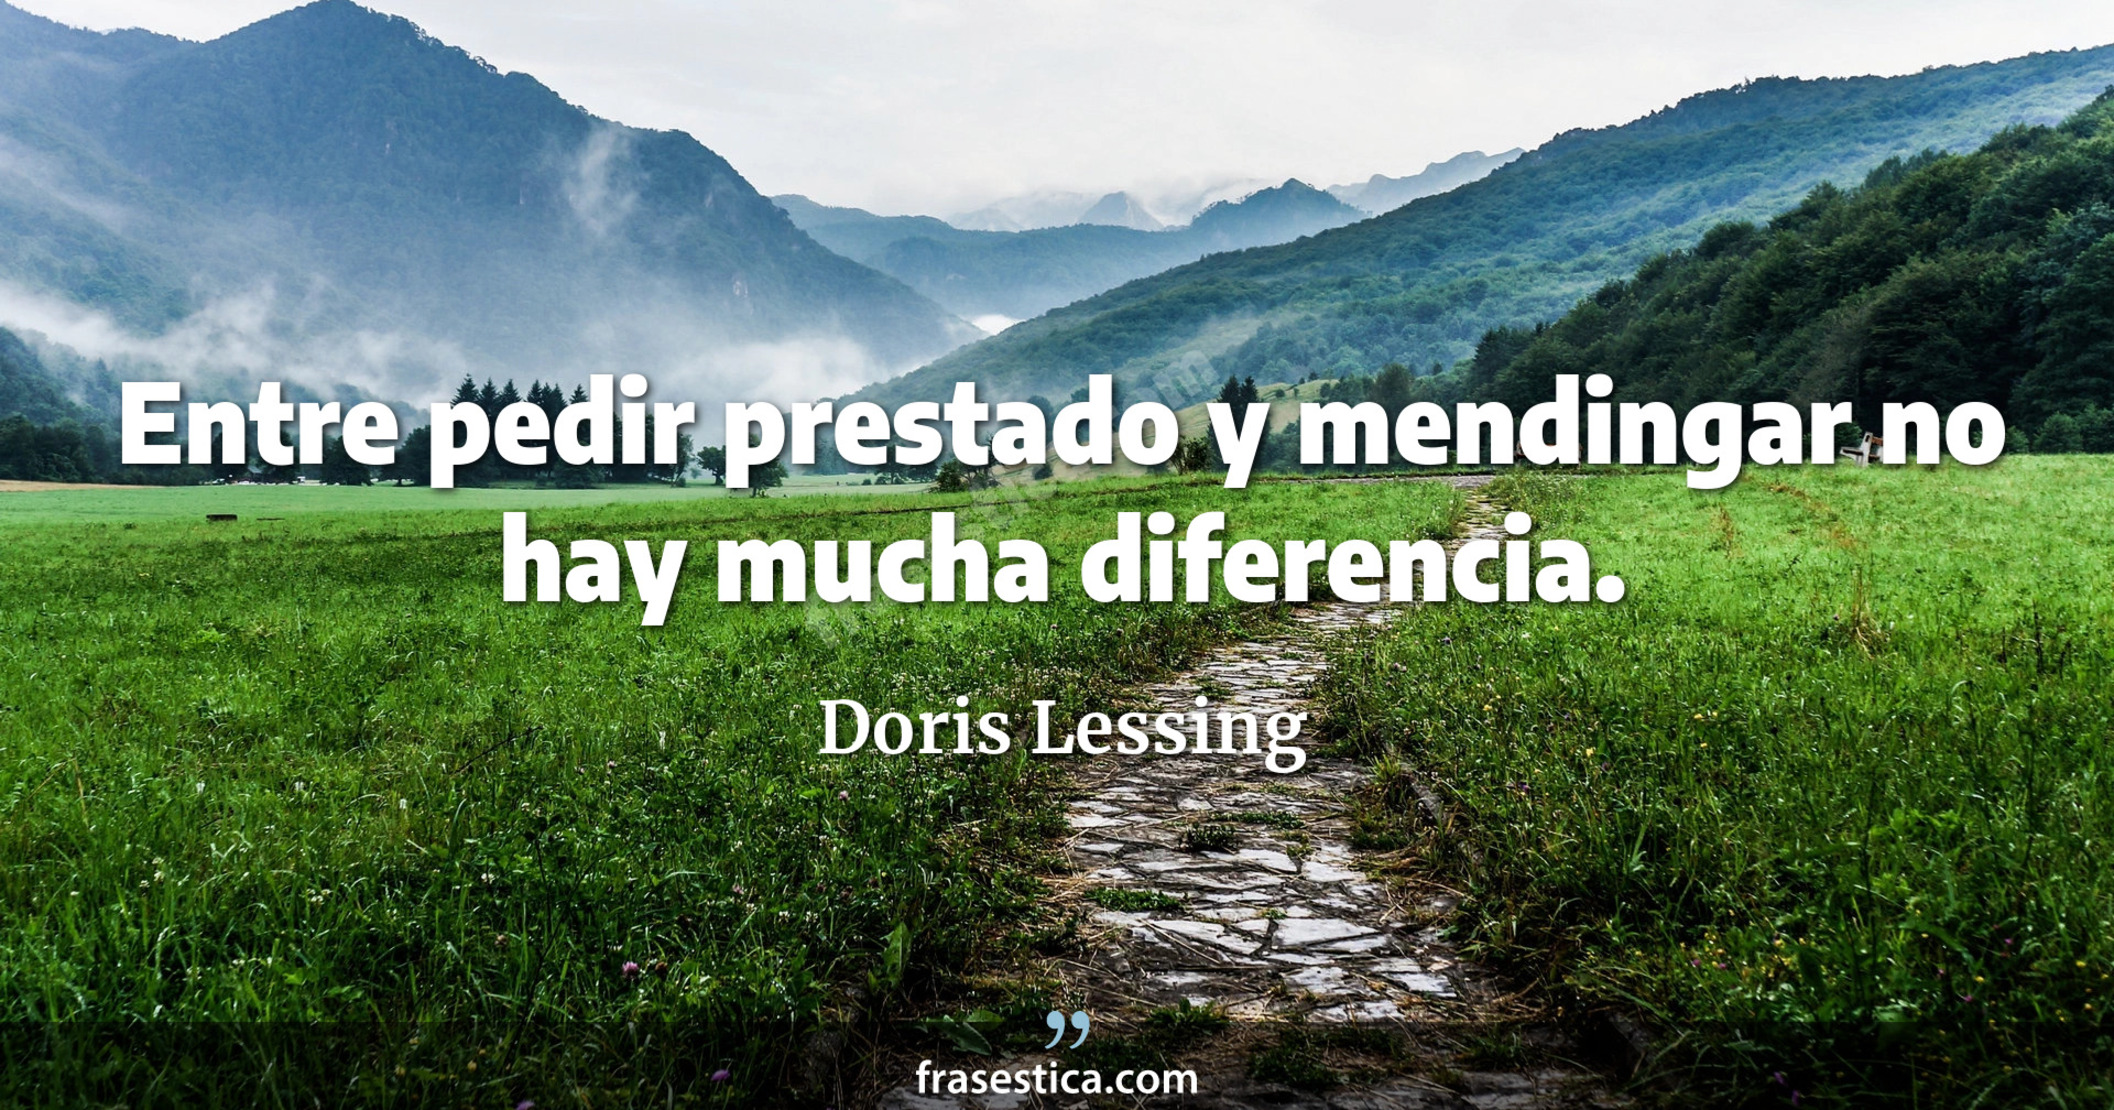 Entre pedir prestado y mendingar no hay mucha diferencia. - Doris Lessing